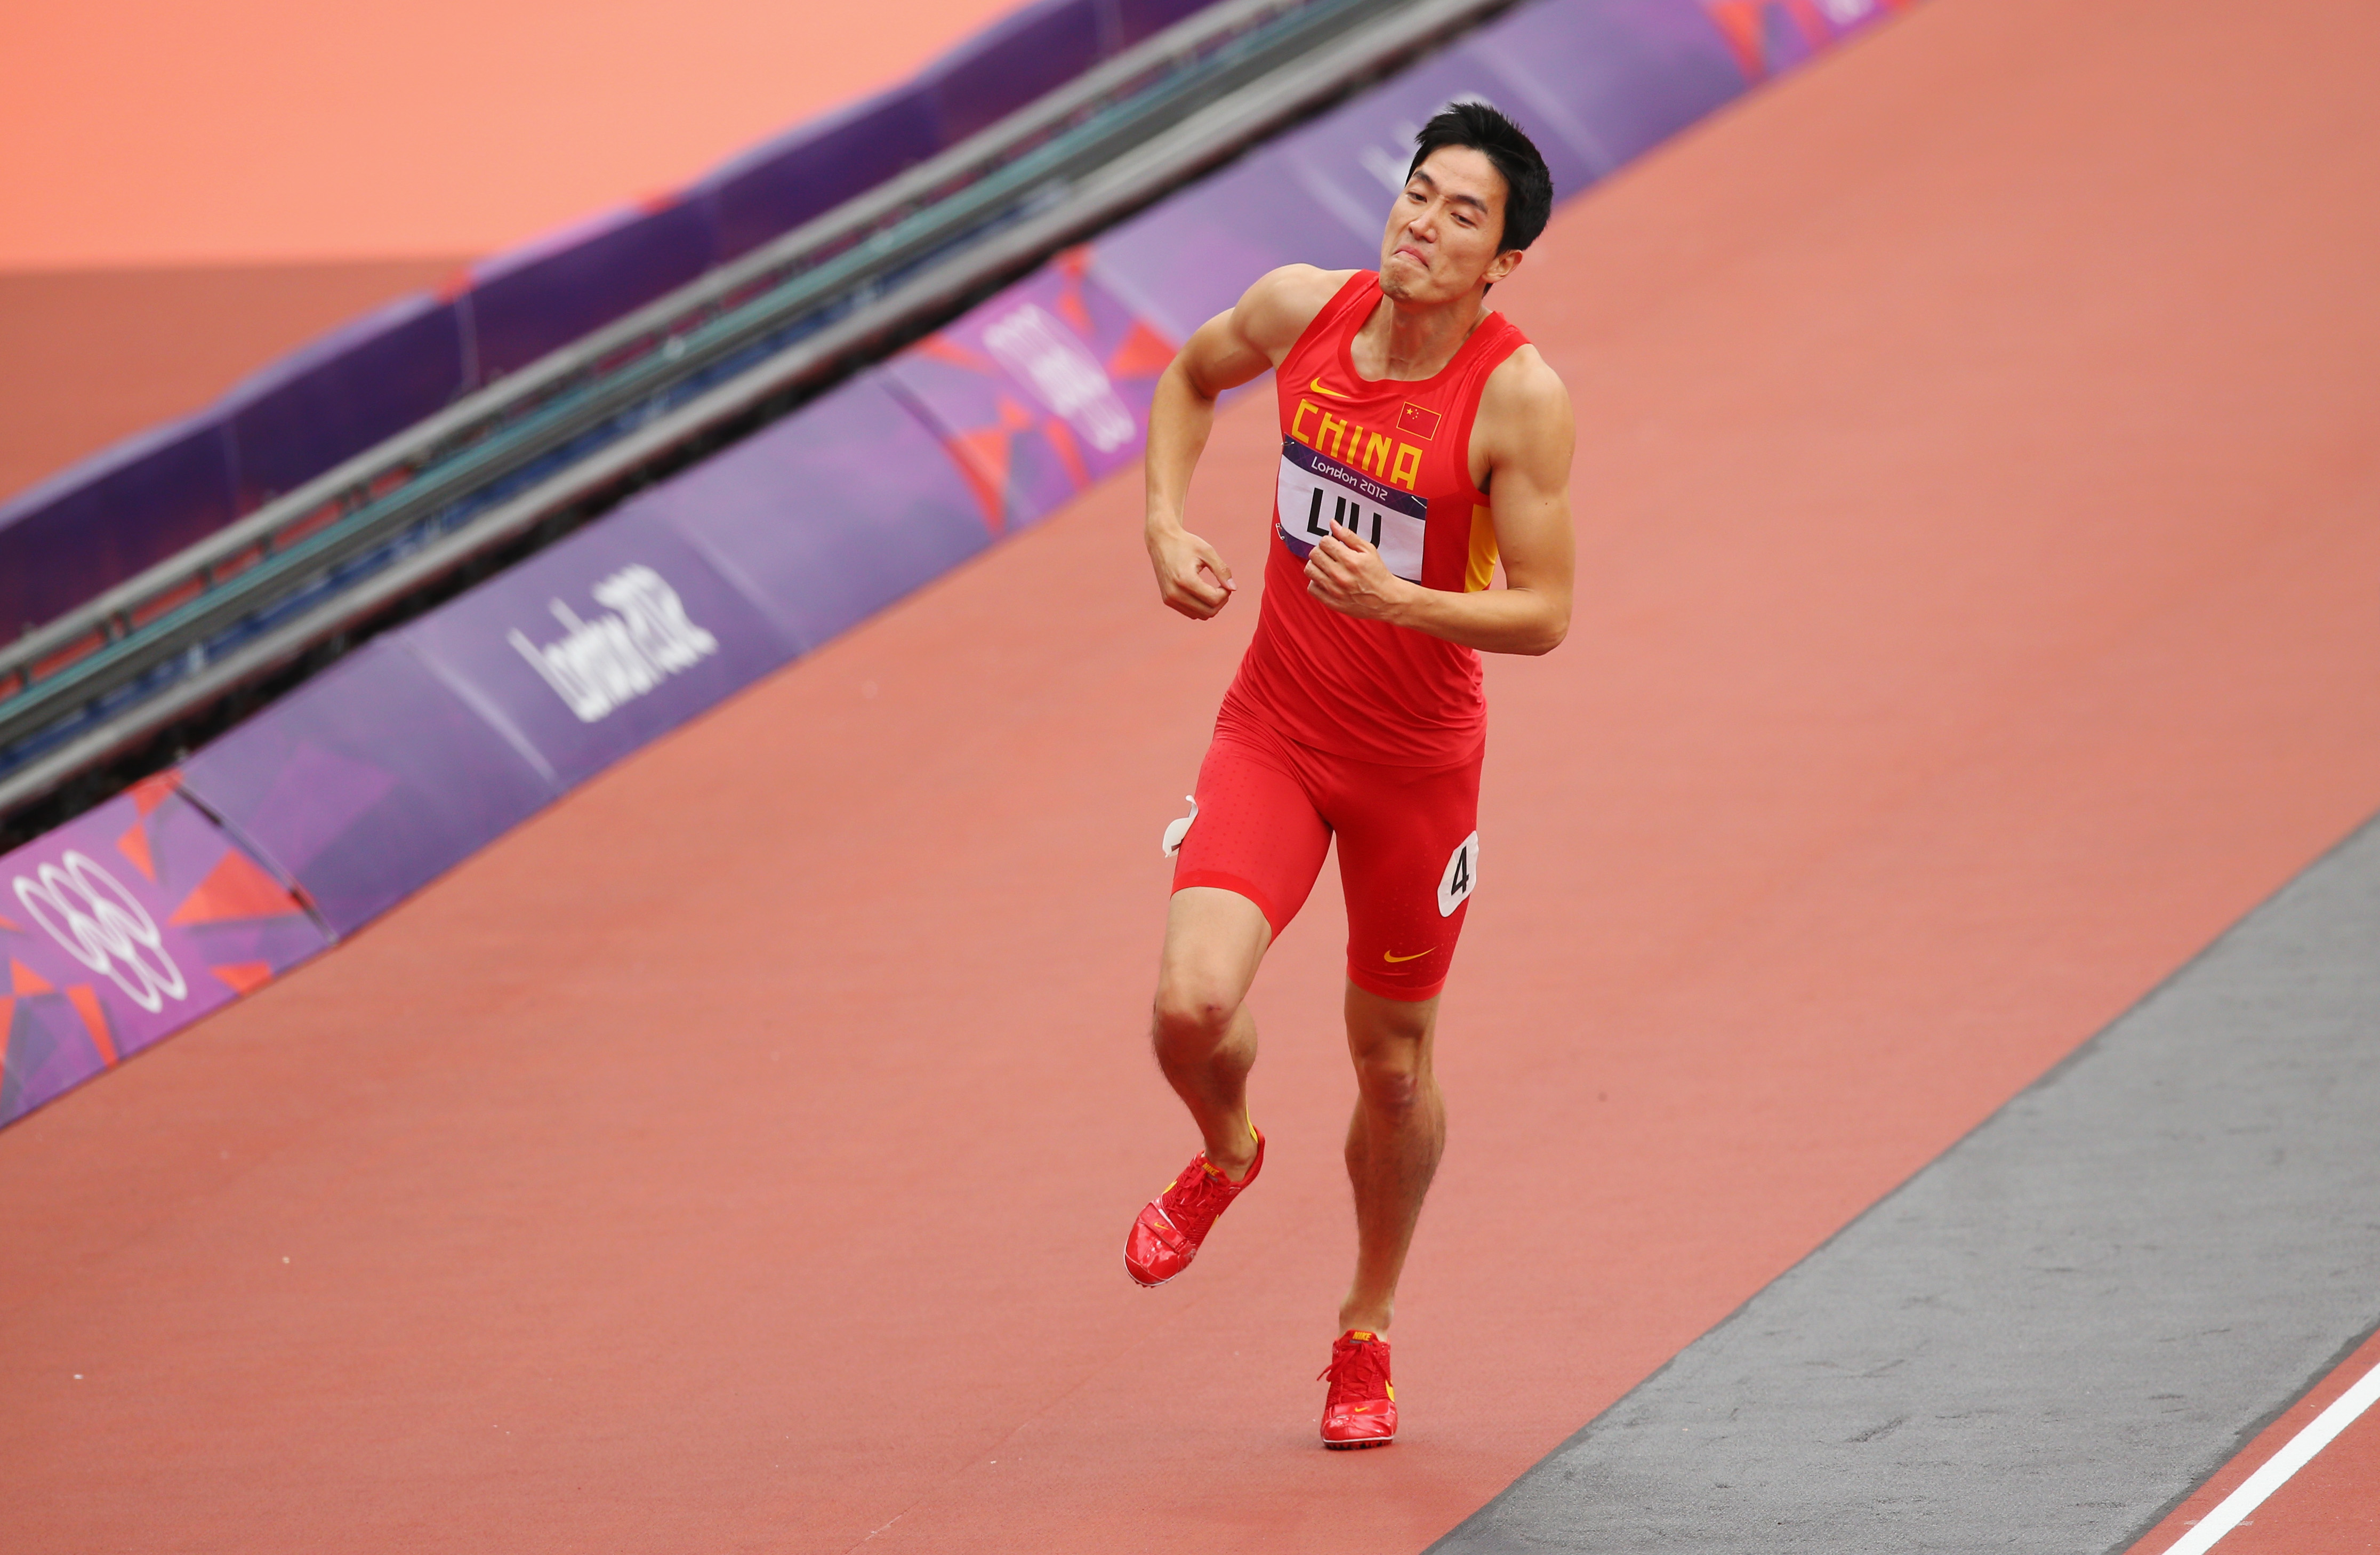 За 1 час спортсмен пробежал 8910 метров. Лю Сян Китай. Лю Сян спортсмены Китая. Бегуны на 100 метров. Бег на 100 метров.